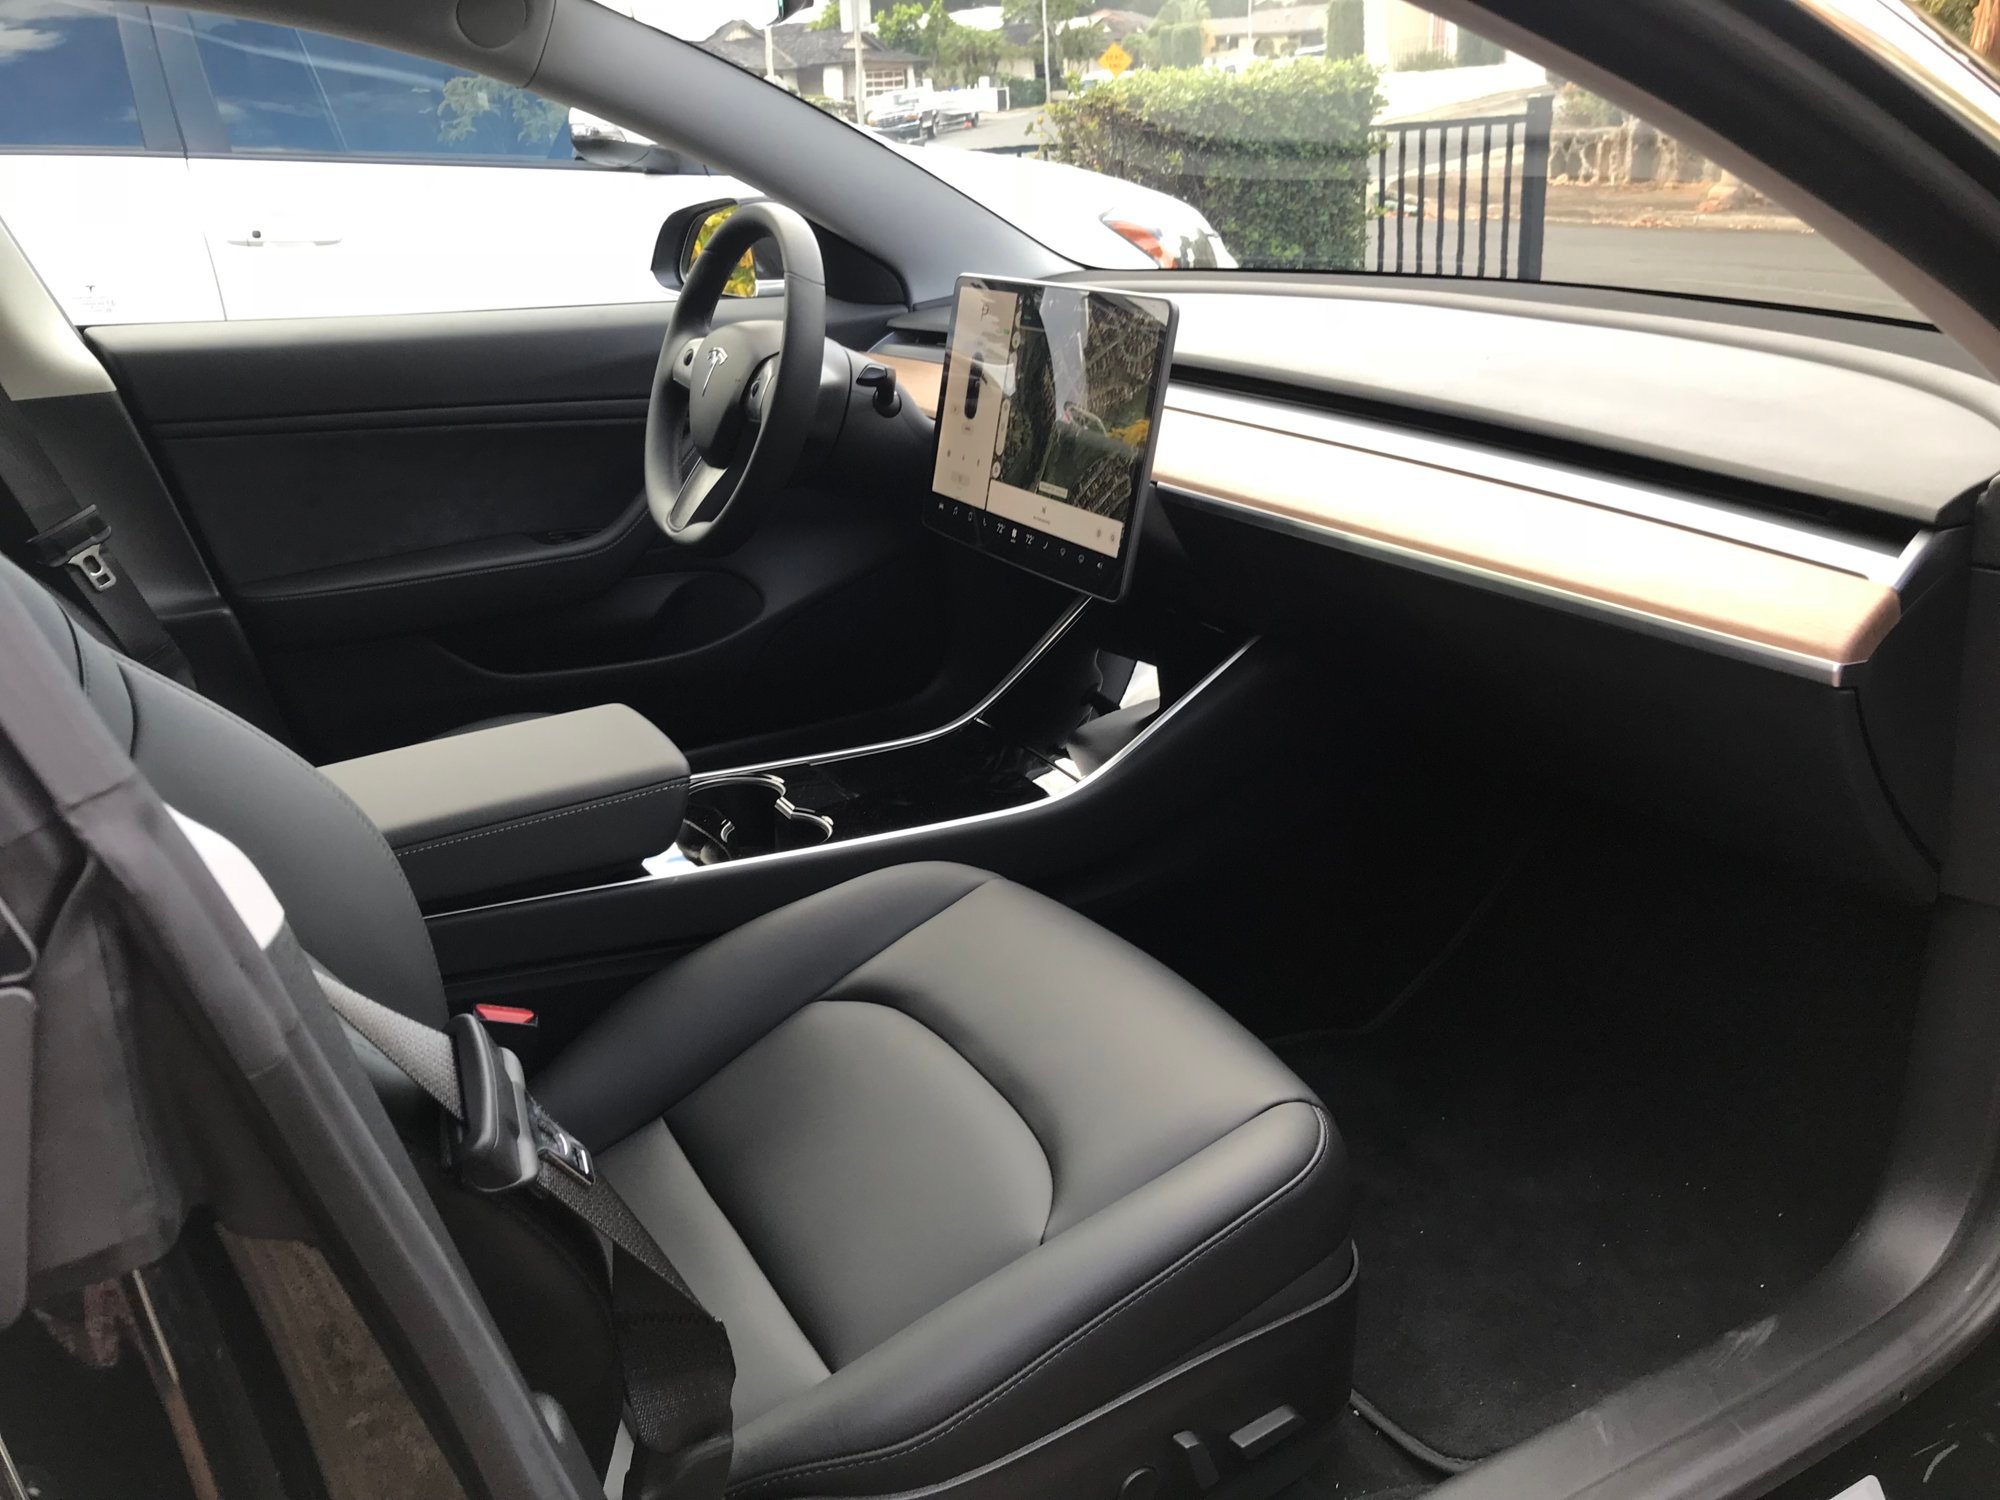 Tesla Model 3 - interior 1.JPG